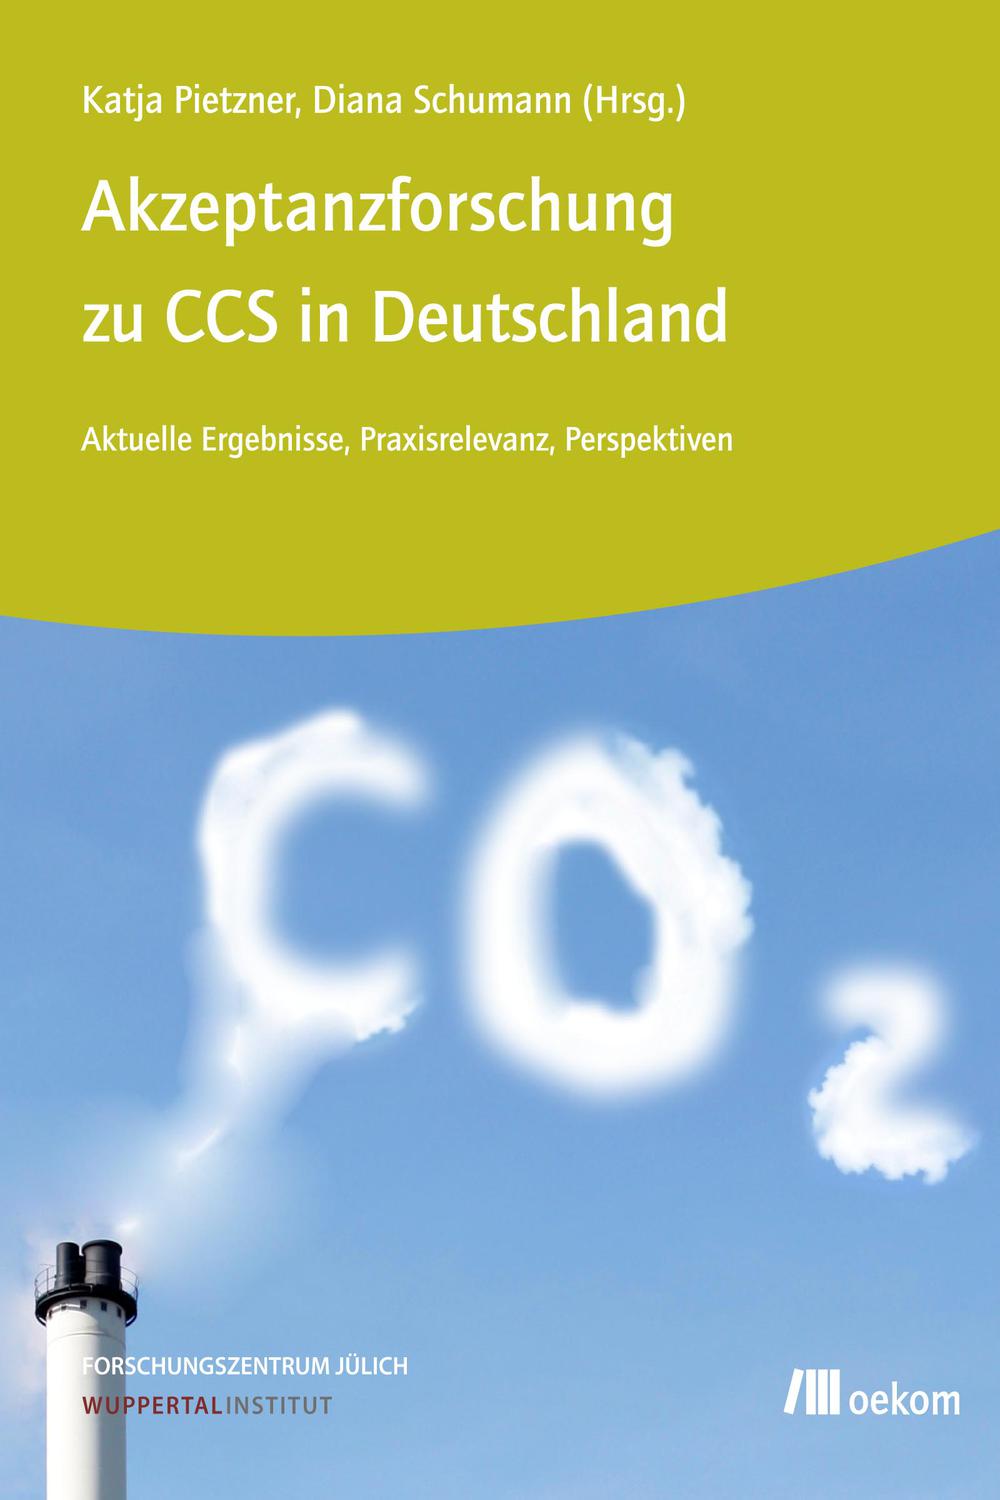 Akzeptanzforschung zu CCS in Deutschland. - Katja Pietzner, Diana Schumann